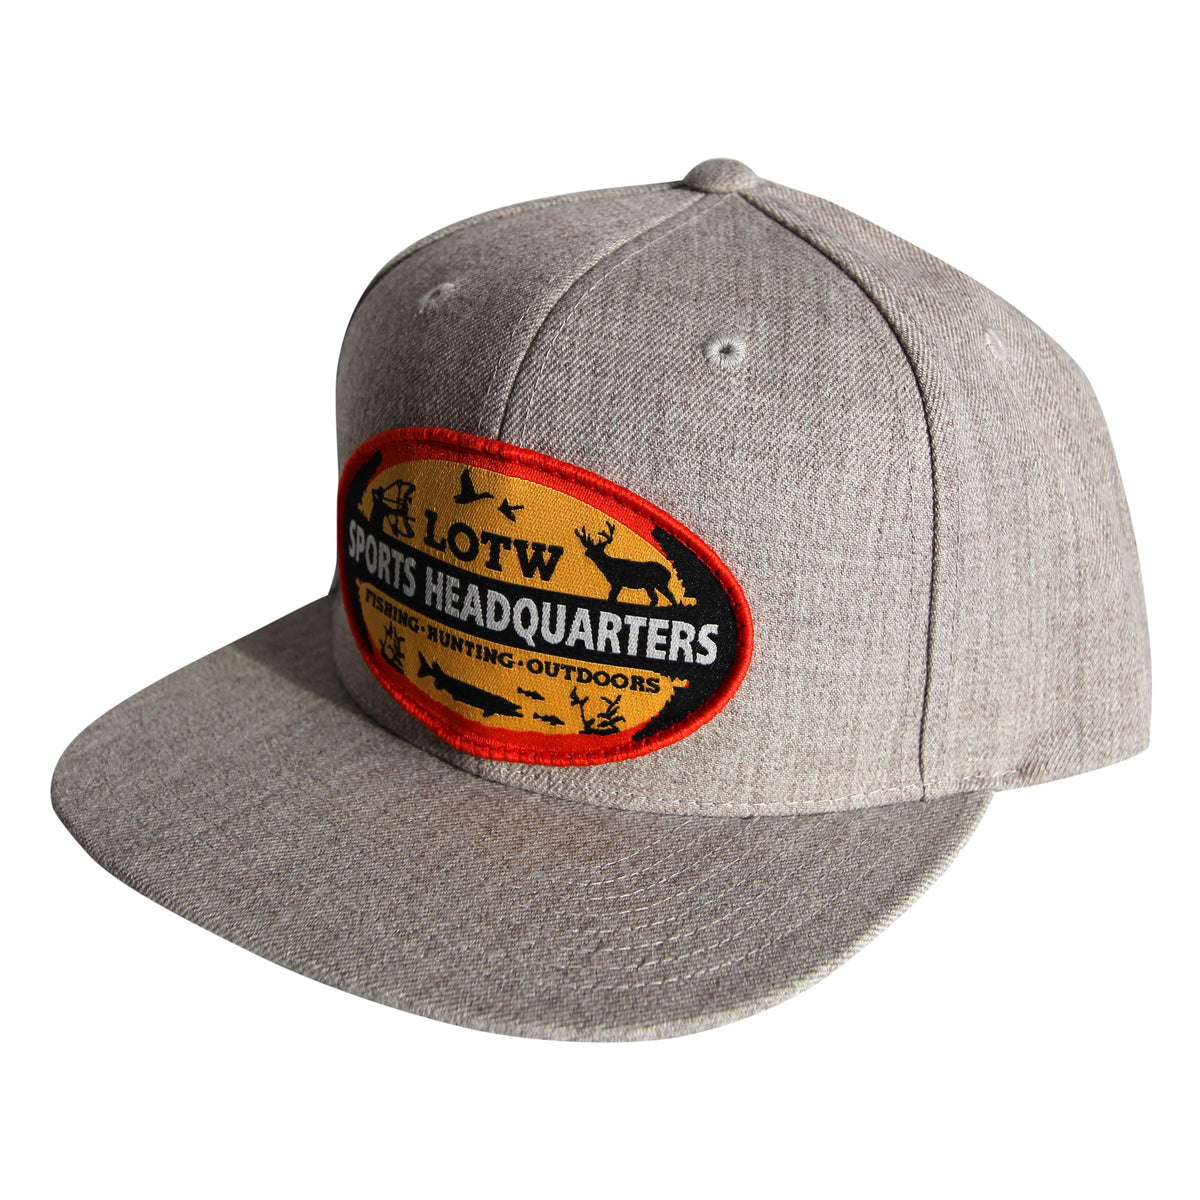 LOTW Sports Headquarters Classic Flat Visor Snapback Hats - Grey